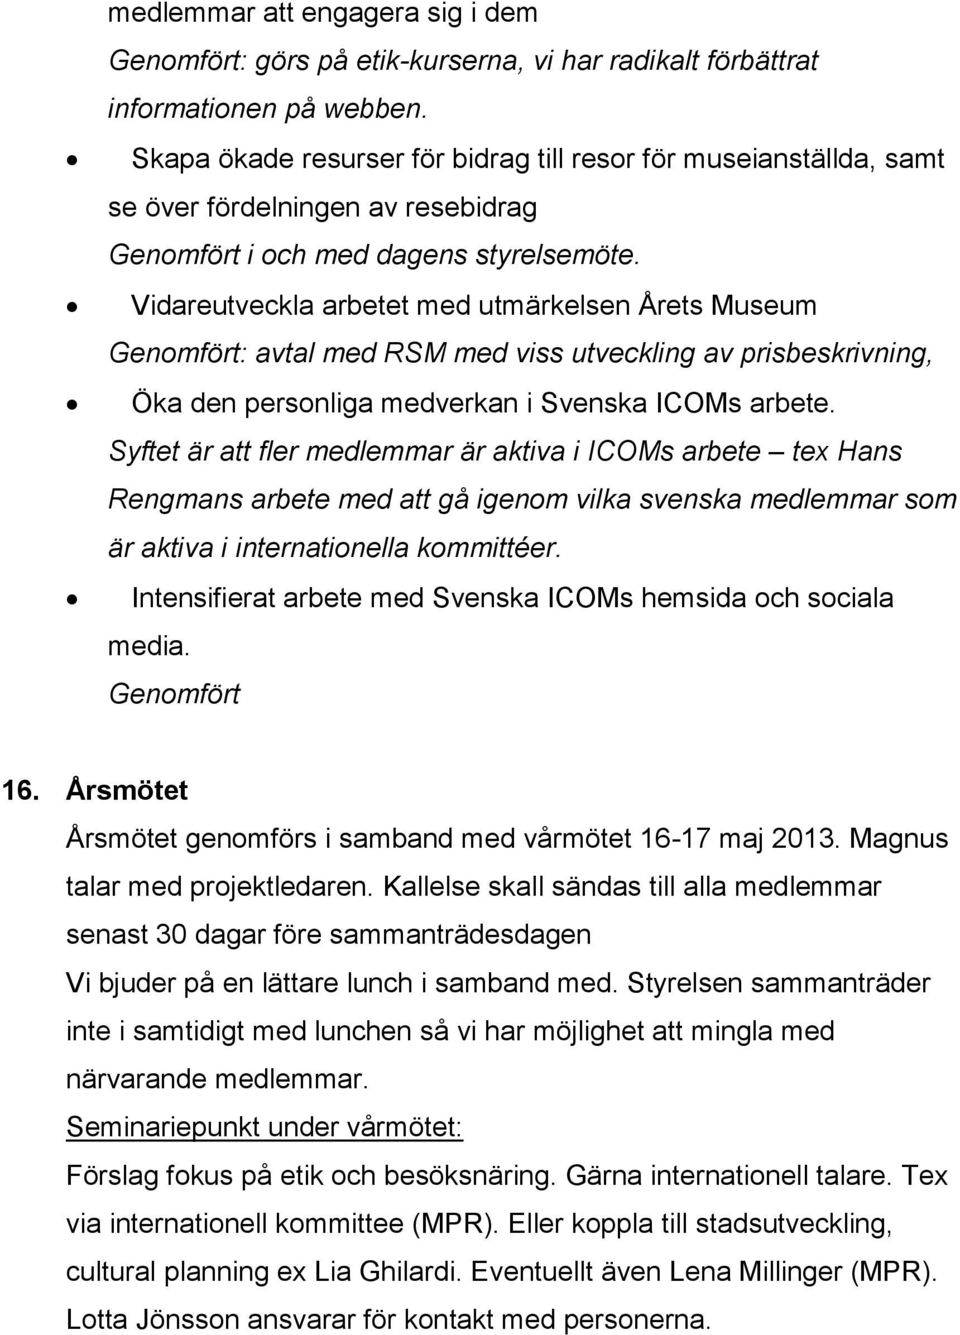 Vidareutveckla arbetet med utmärkelsen Årets Museum Genomfört: avtal med RSM med viss utveckling av prisbeskrivning, Öka den personliga medverkan i Svenska ICOMs arbete.